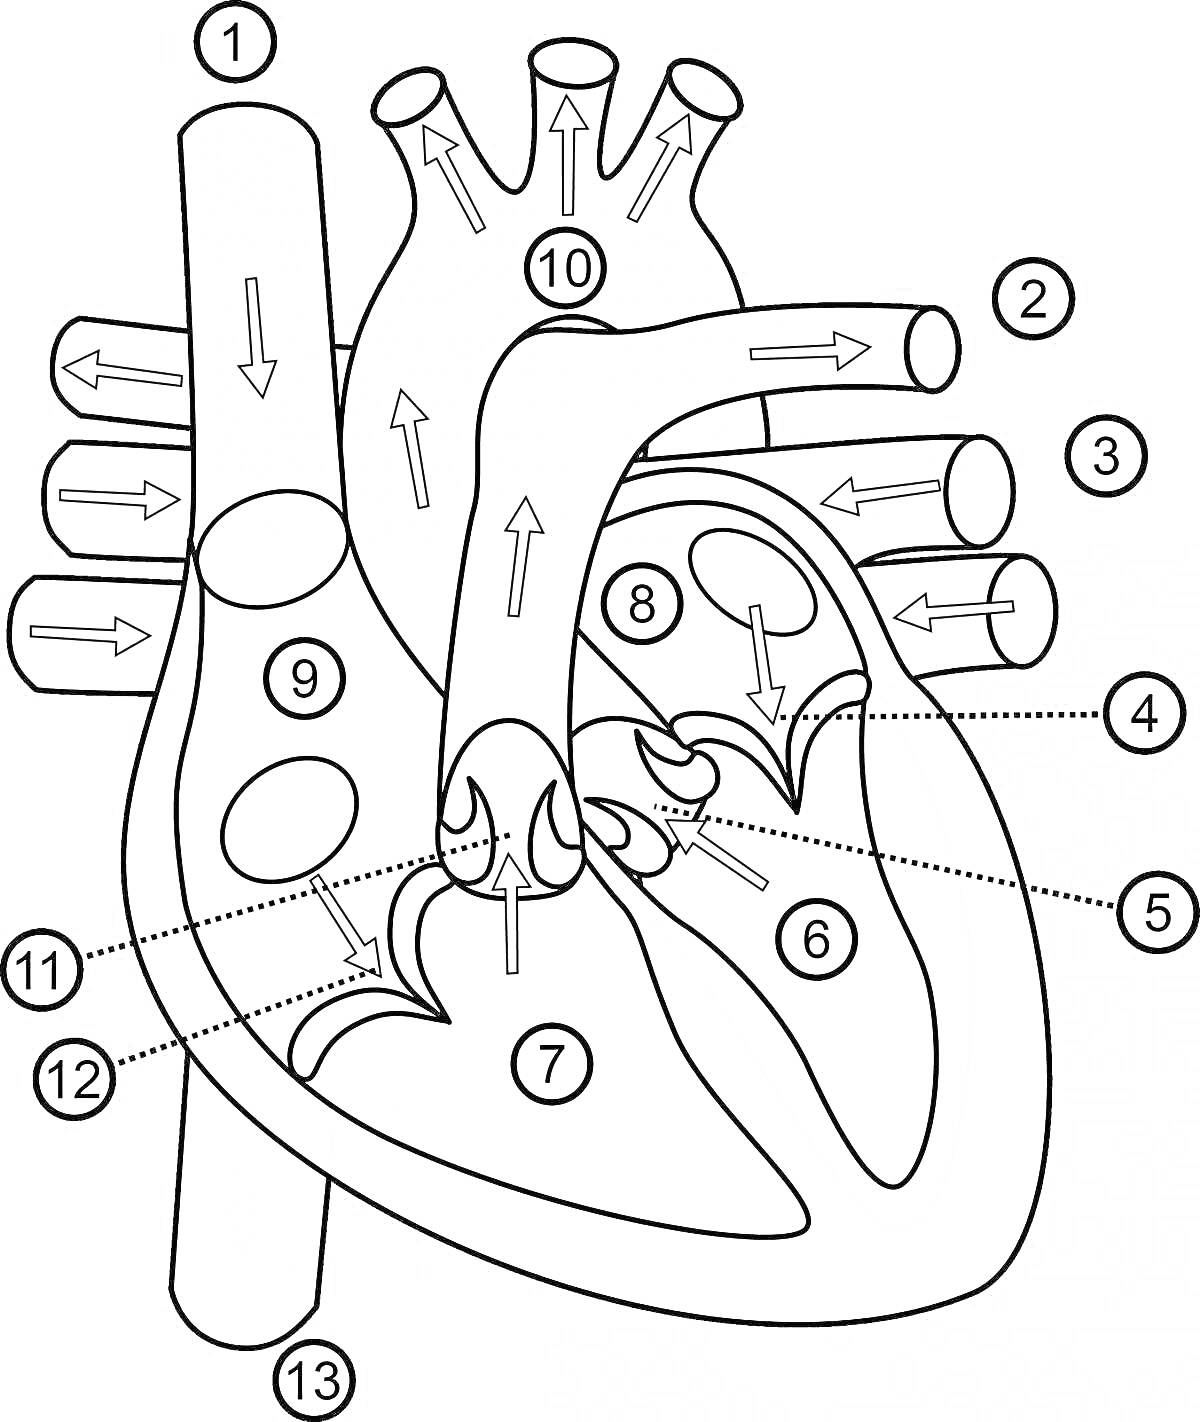 Раскраска Анатомия сердца человека: левое предсердие, правое предсердие, правый желудочек, левый желудочек, аорта, легочная артерия, верхняя полая вена, нижняя полая вена, межпредсердная перегородка, межжелудочковая перегородка, митральный клапан, трикуспидальный к